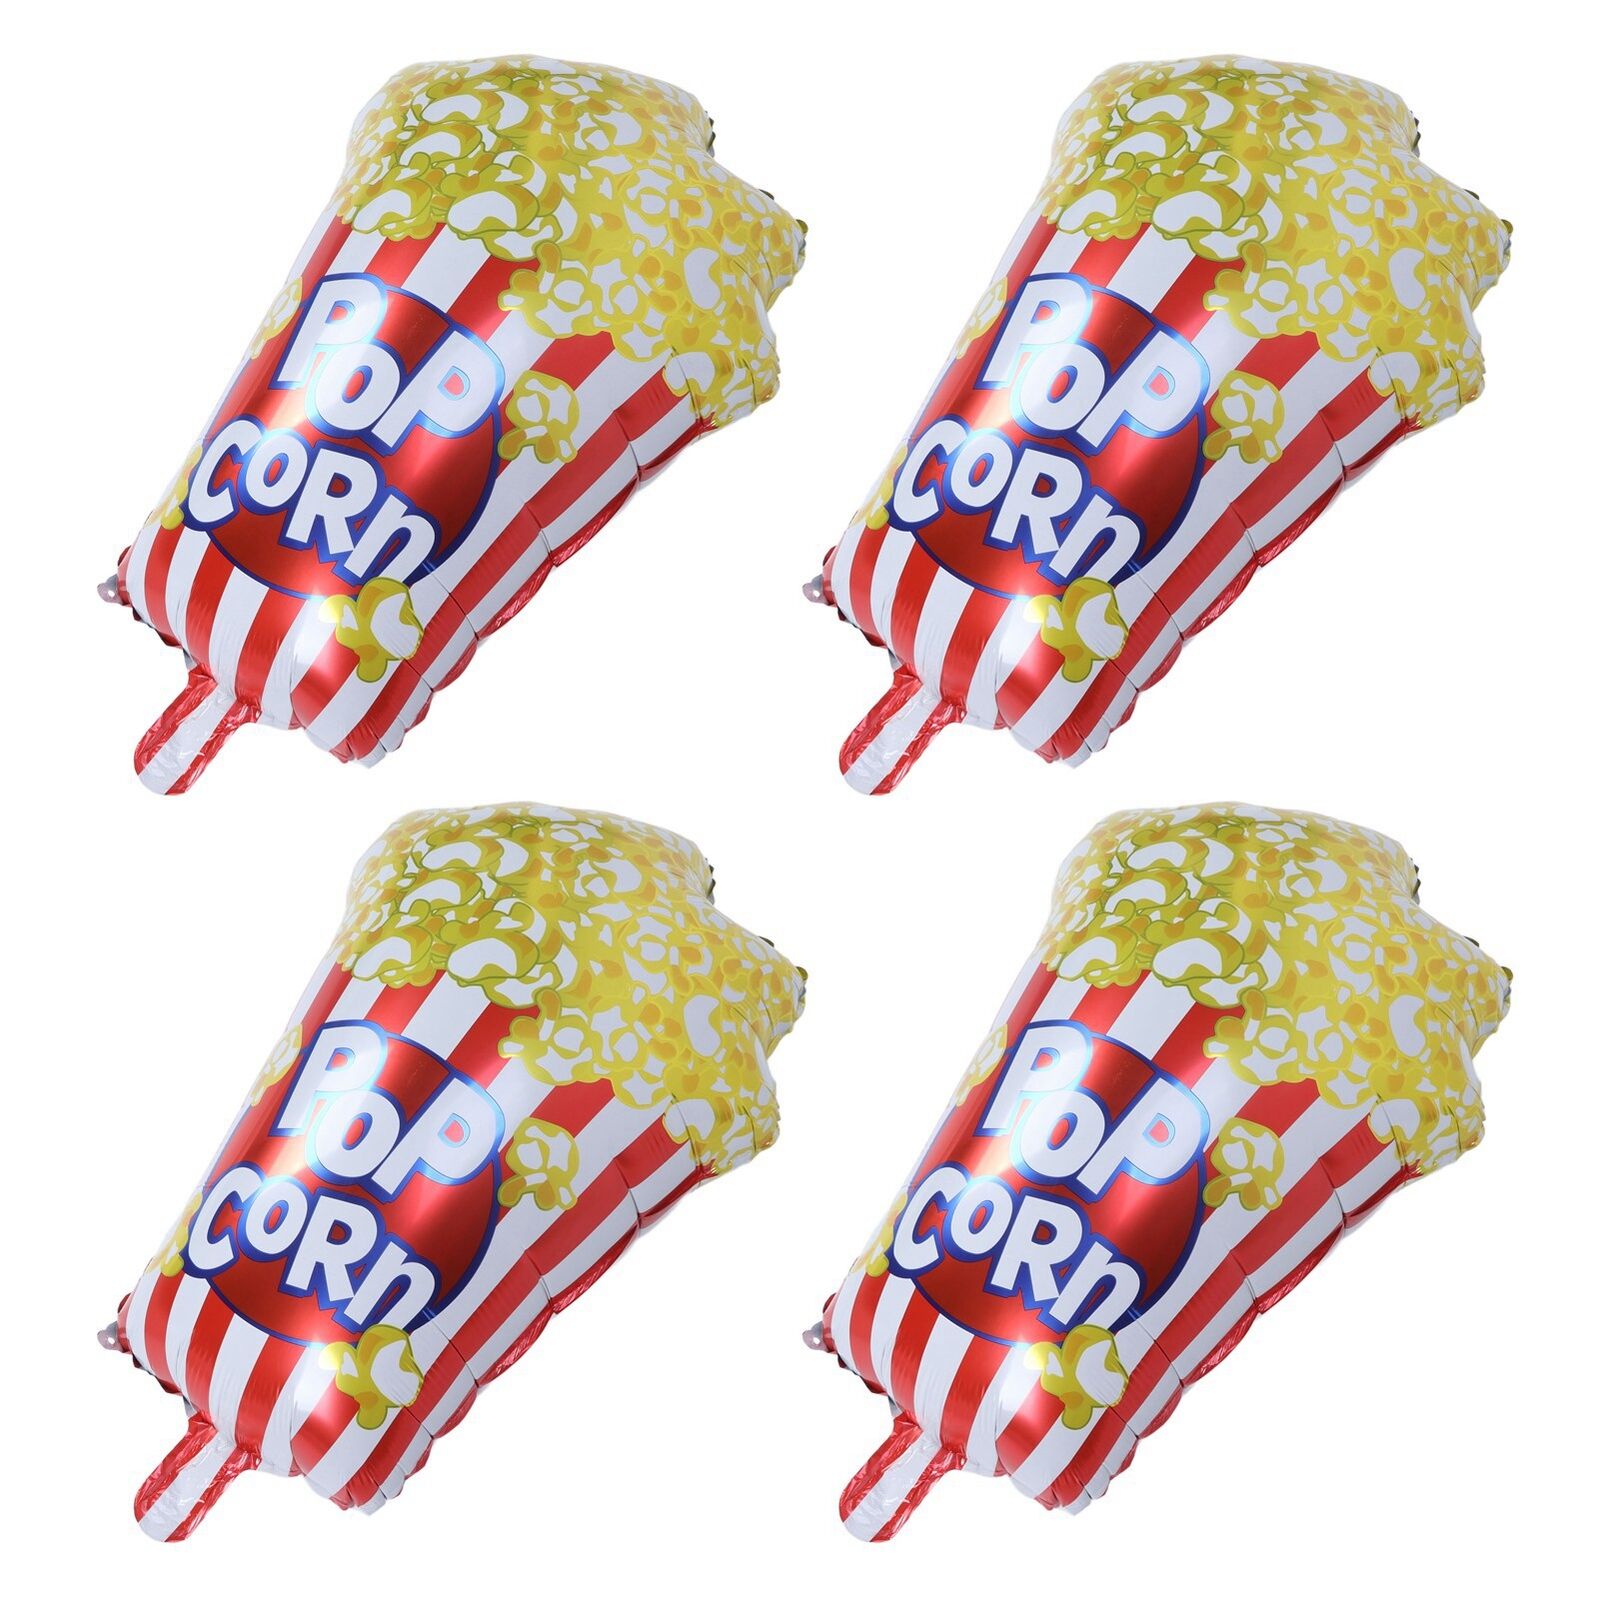 10pcs Popcorn Party Balloons Reusable Movie Theme Party Balloons Decor Gift BUN